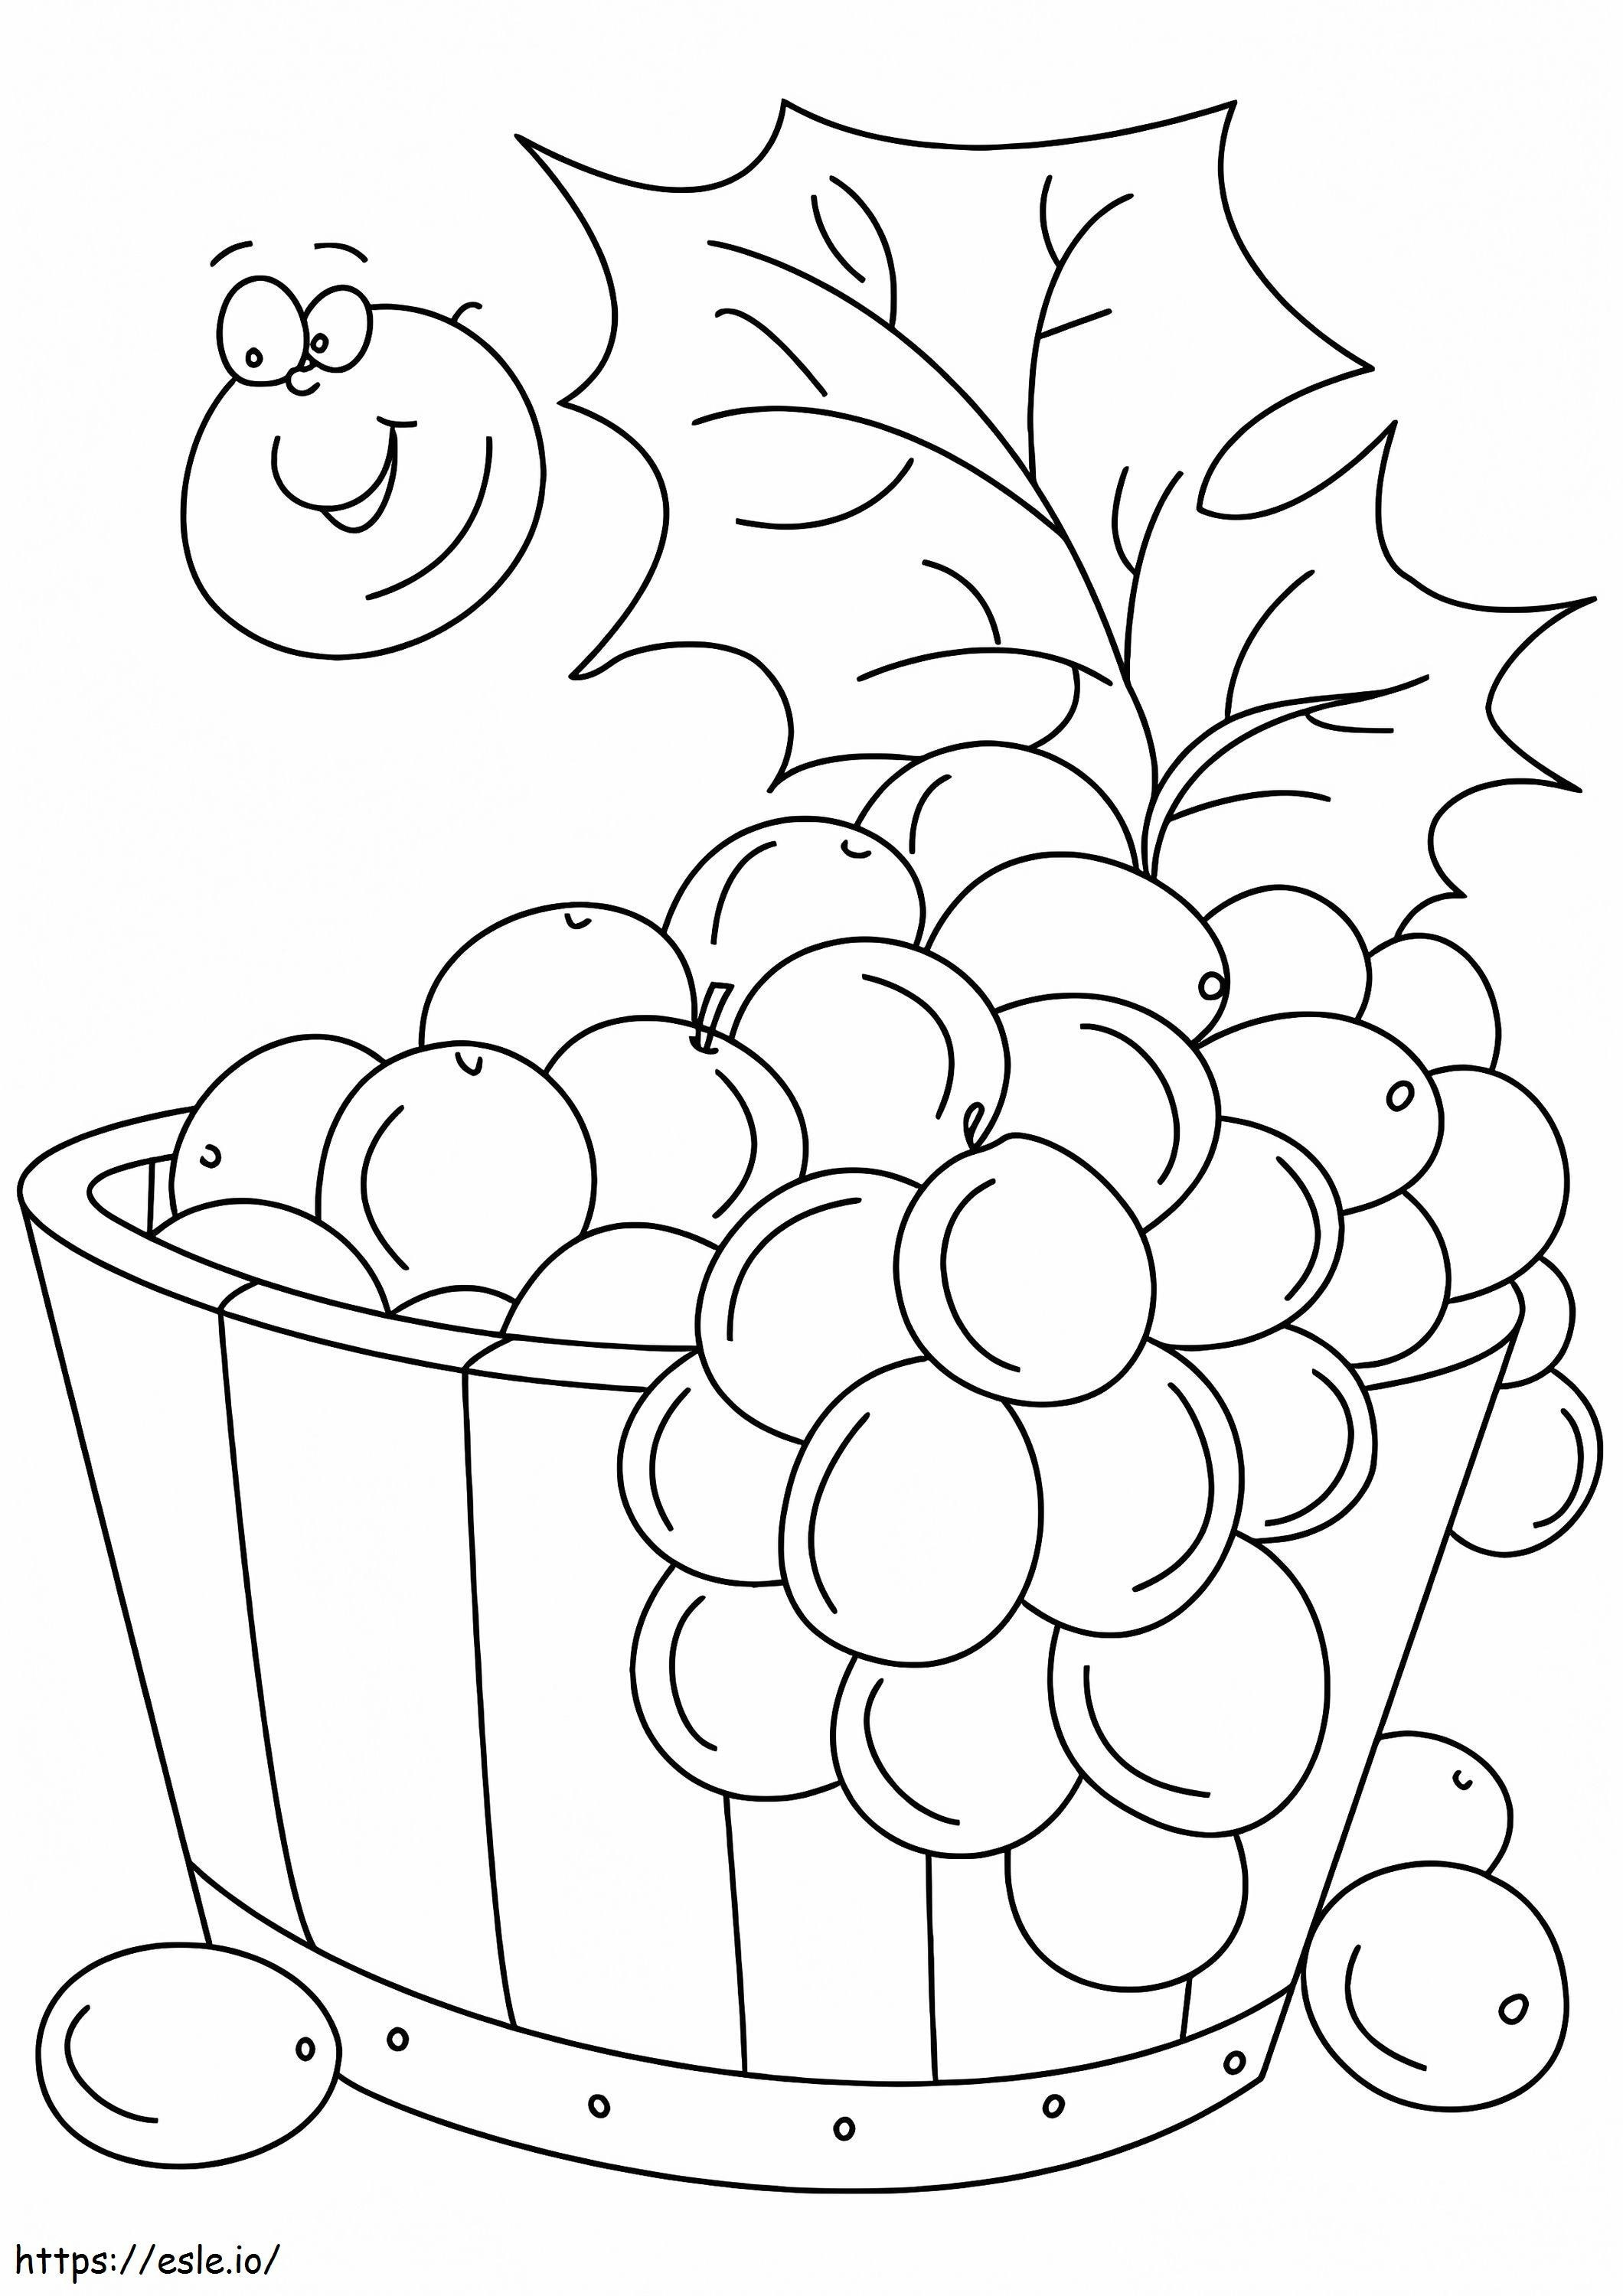  Un secchio per uva A4 da colorare